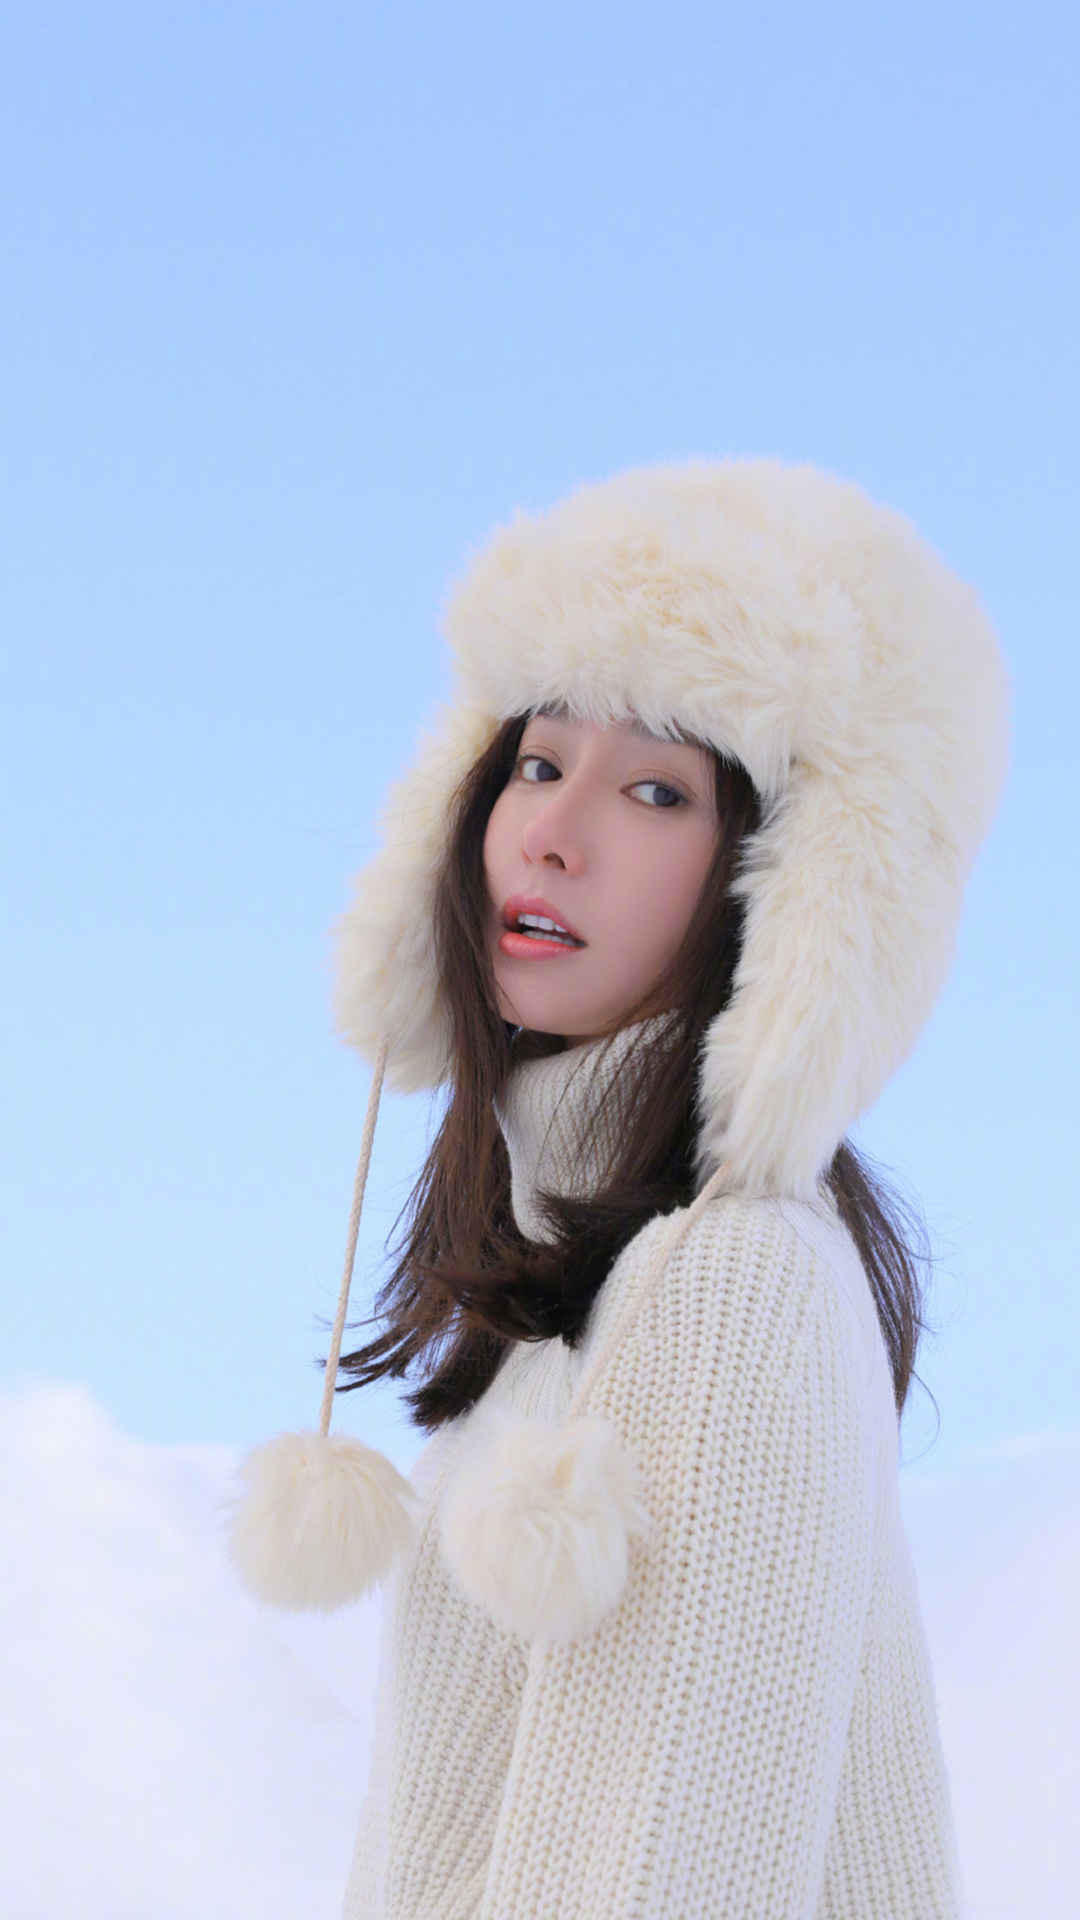 美女秦岚大棉帽子欢快踏雪的冬季写真手机壁纸套图1